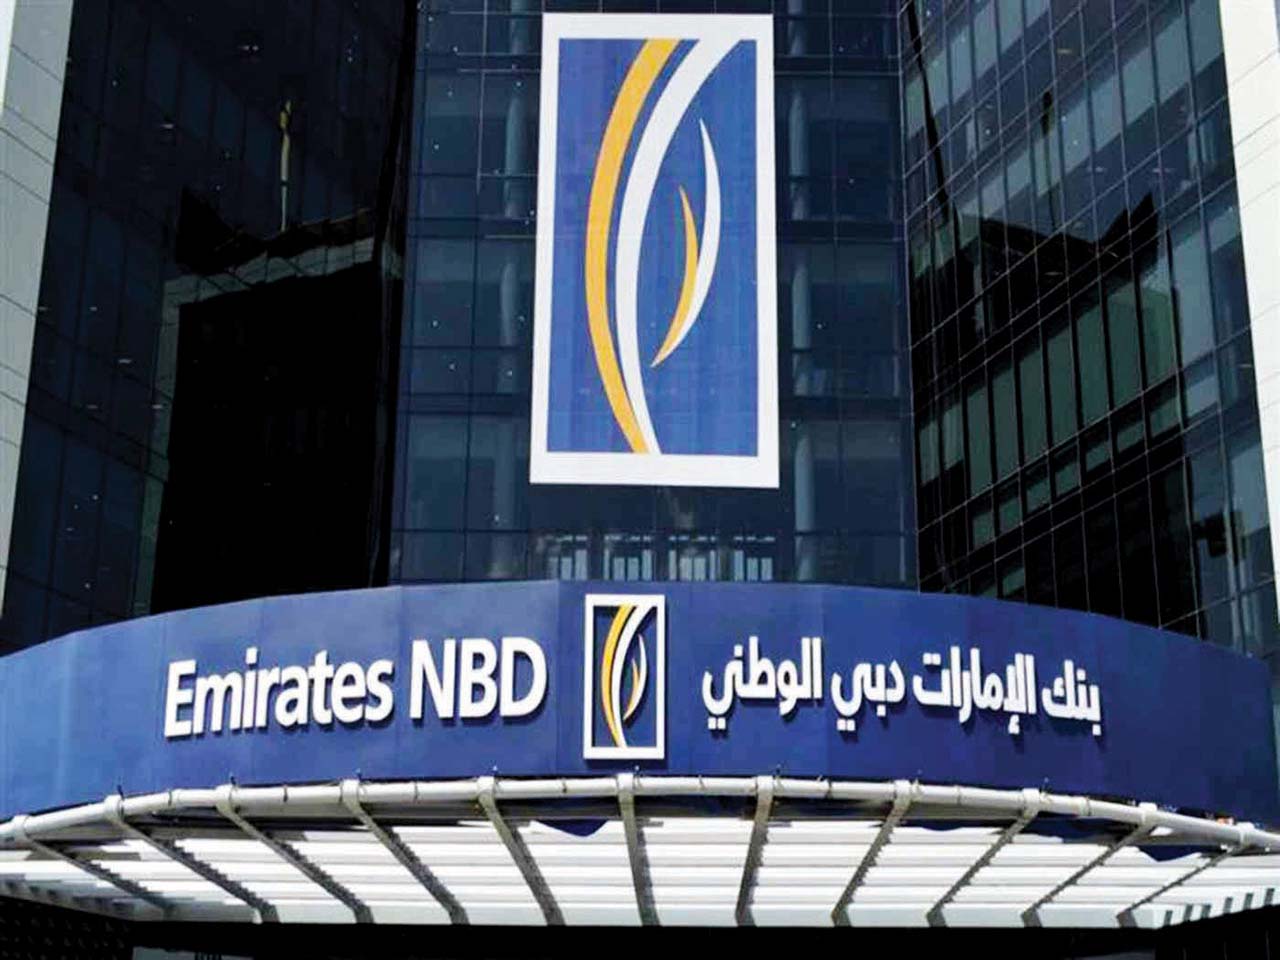 بنك الإمارات دبي الوطني المنظم الرئيسي لأول صكوك سيادية مصرية بقيمة 1.5 مليار دولار